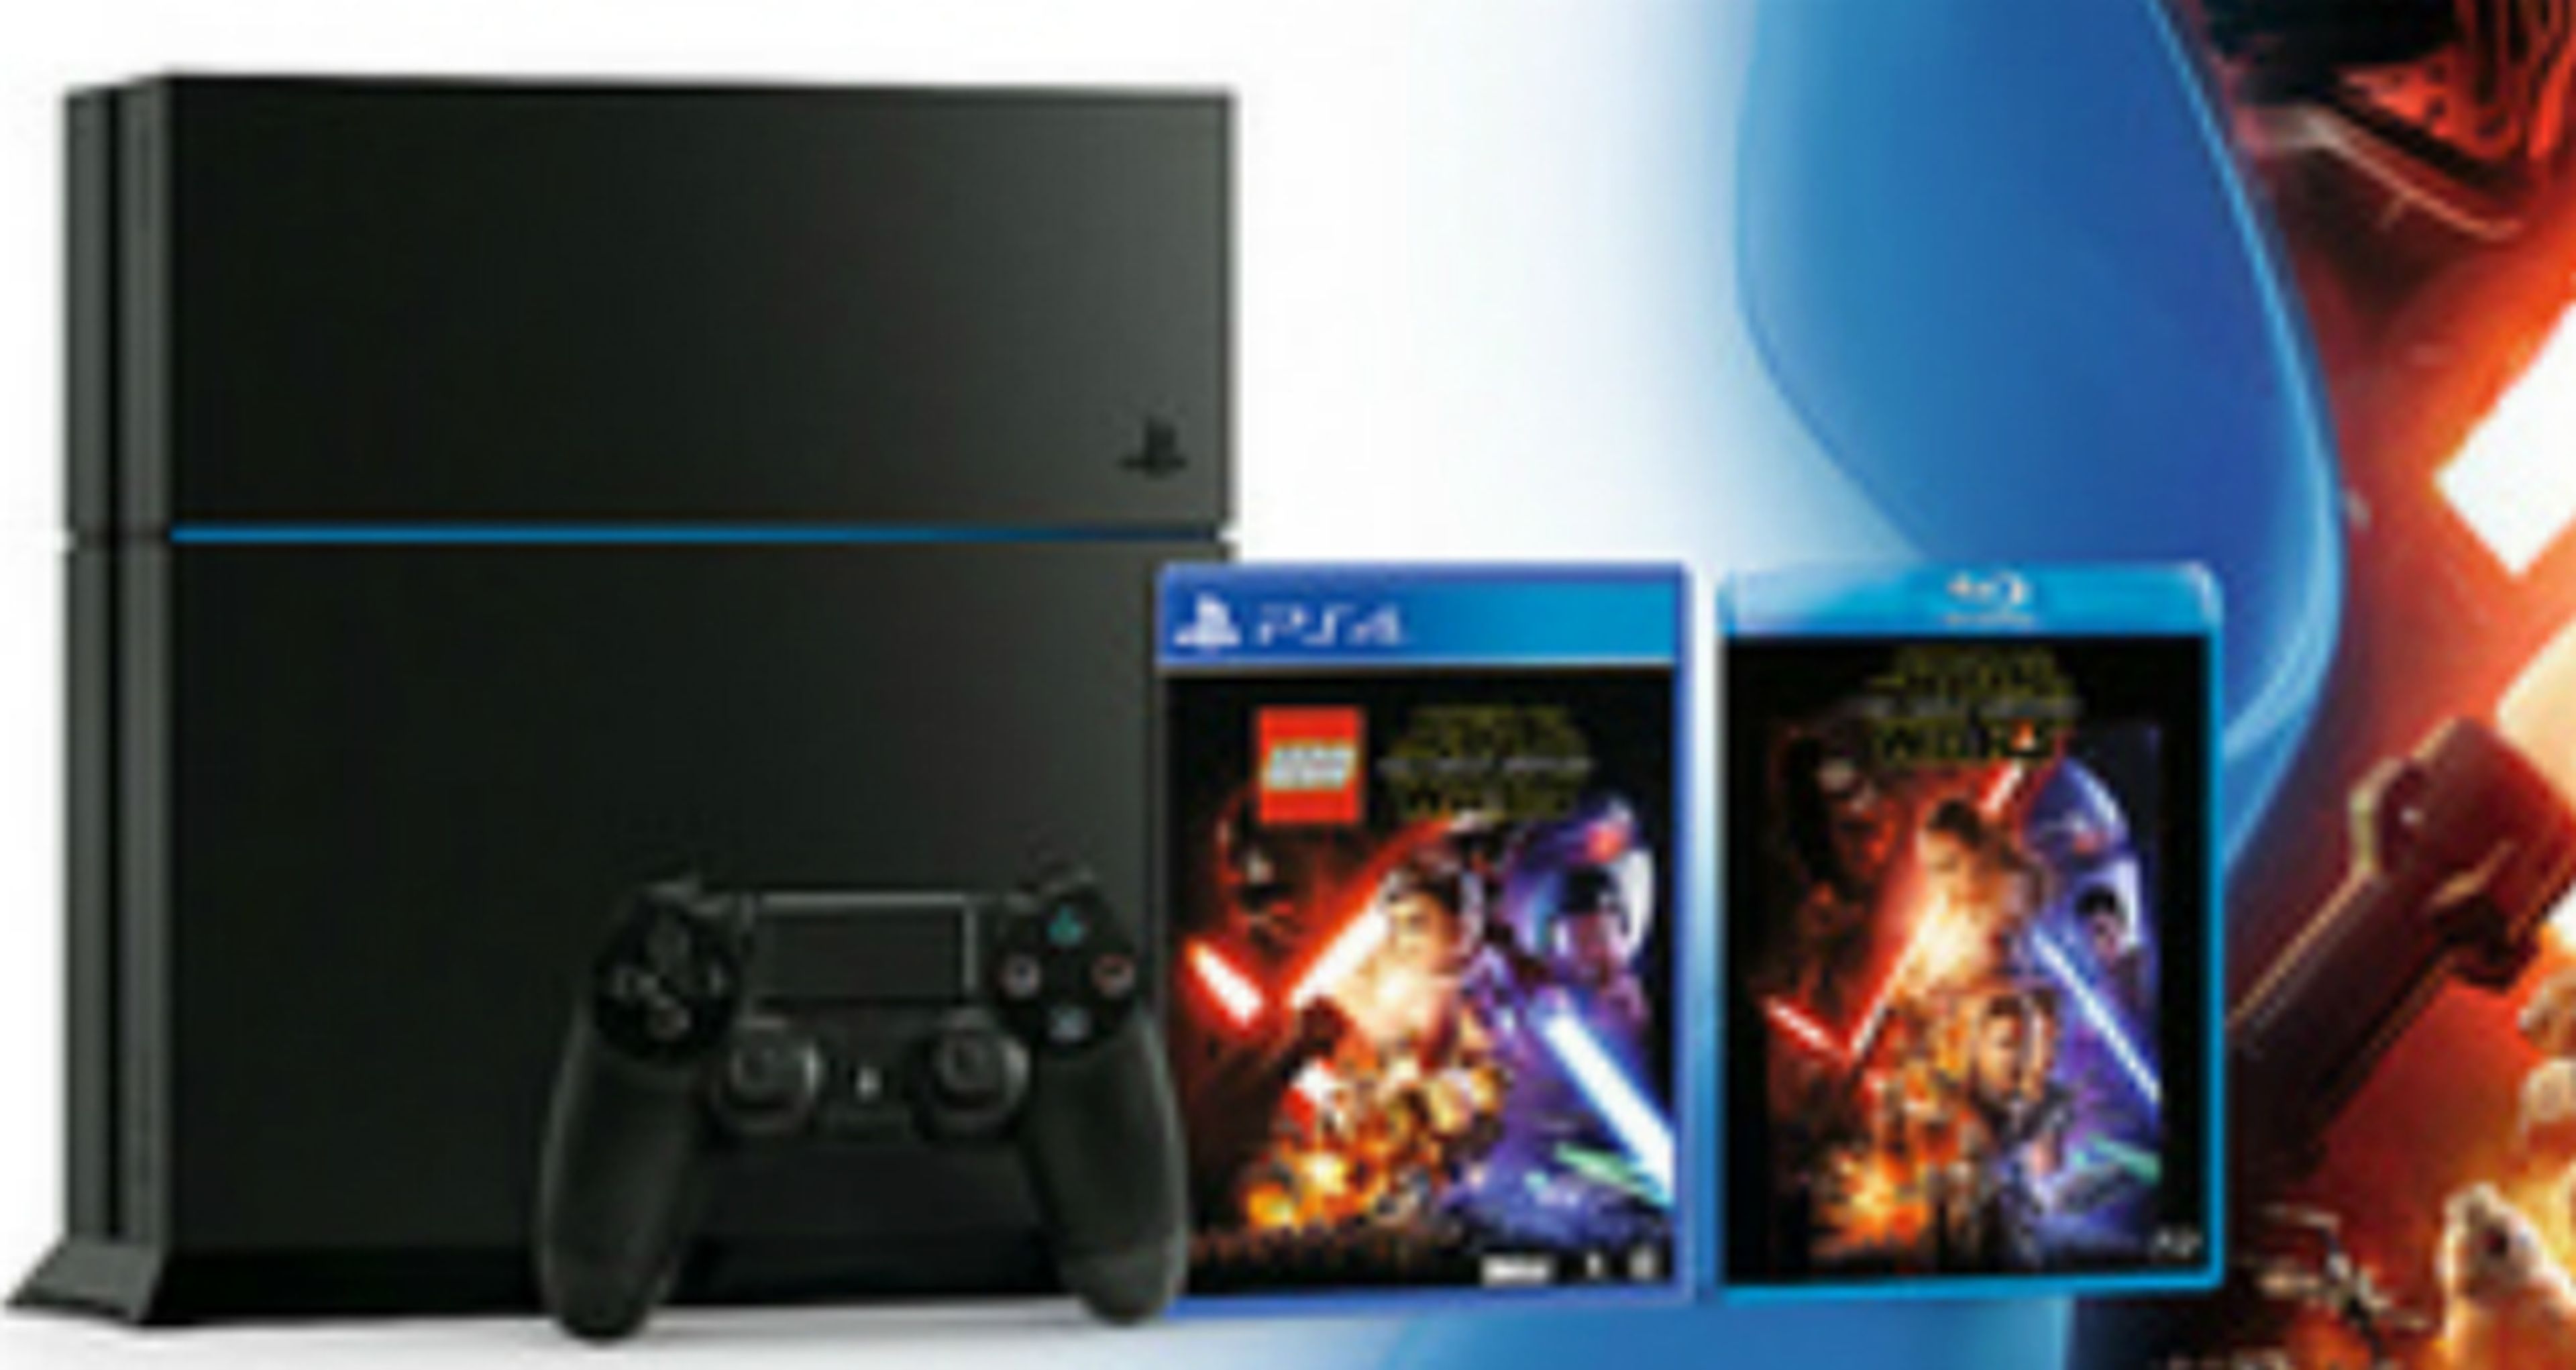 PS4 - Pack con Star Wars 7 El Despertar de la Fuerza en Blu-Ray y LEGO Star Wars The Force Awakens